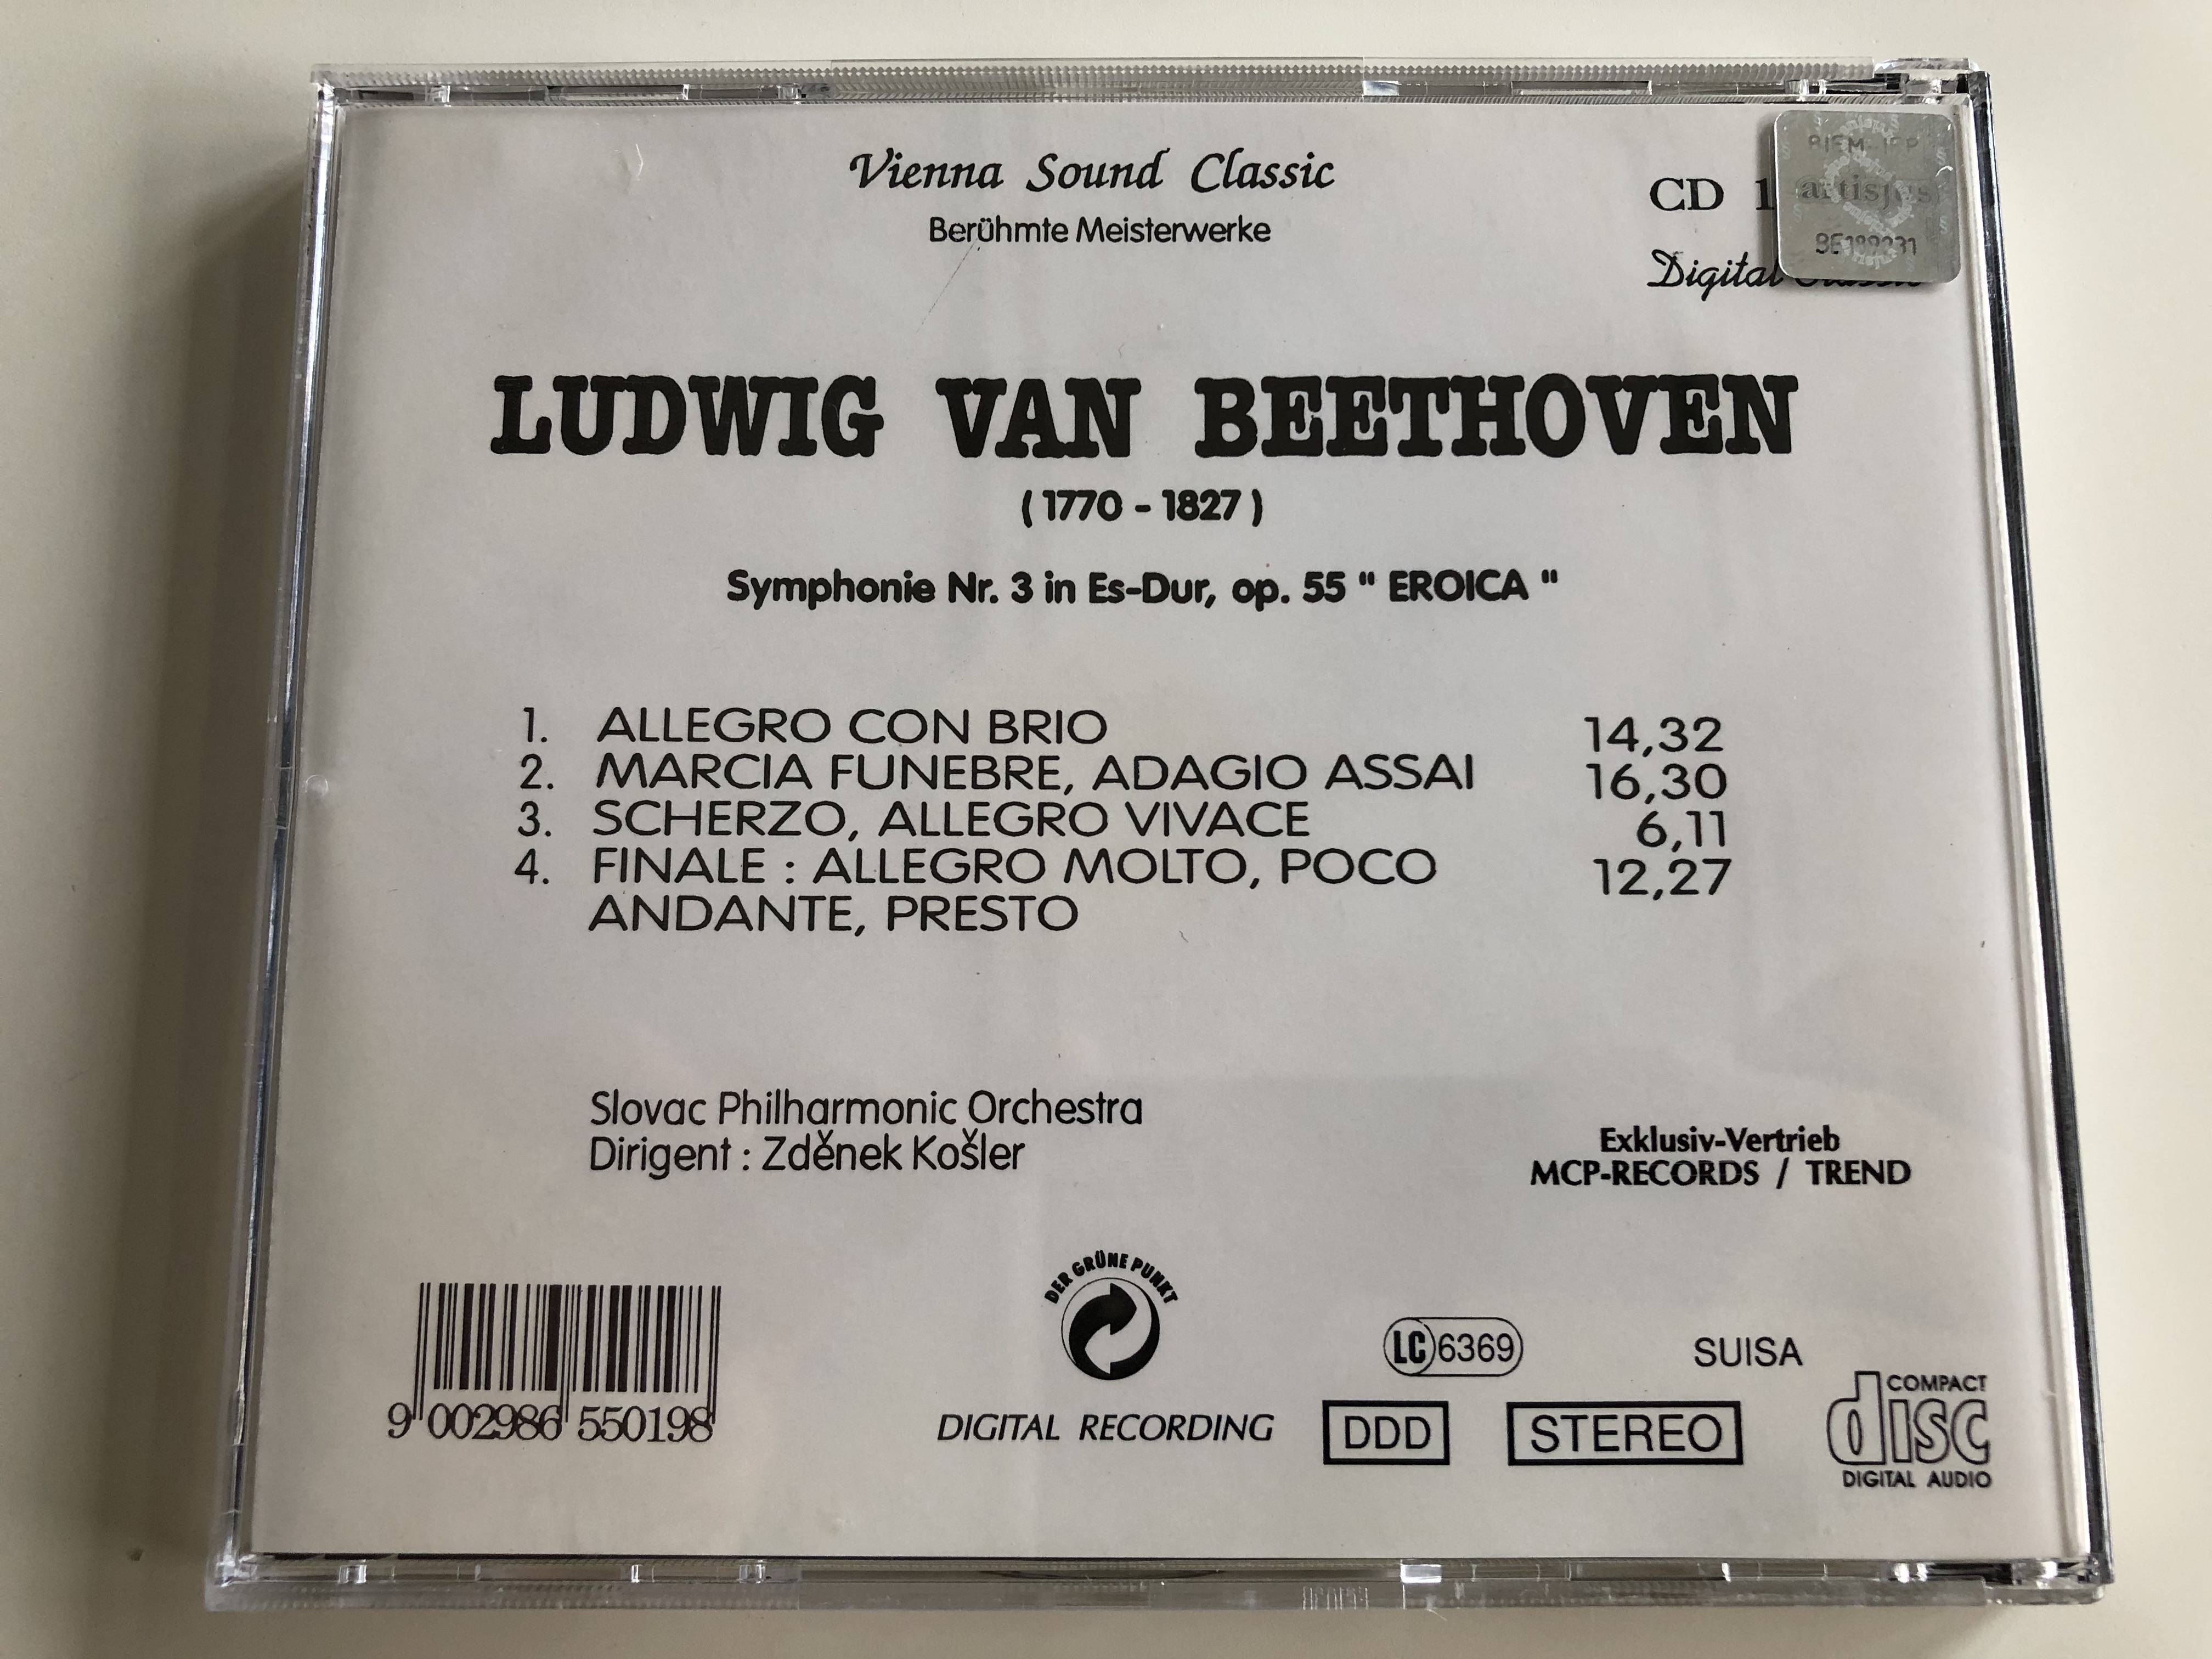 beethoven-symphonie-nr.-3-in-s-dur-op.55-eroica-slovak-philharmonic-orchestra-conducted-by-zdenek-kosler-vienna-sound-classic-ber-hmte-meisterwerke-audio-cd-lc-6369-3-.jpg